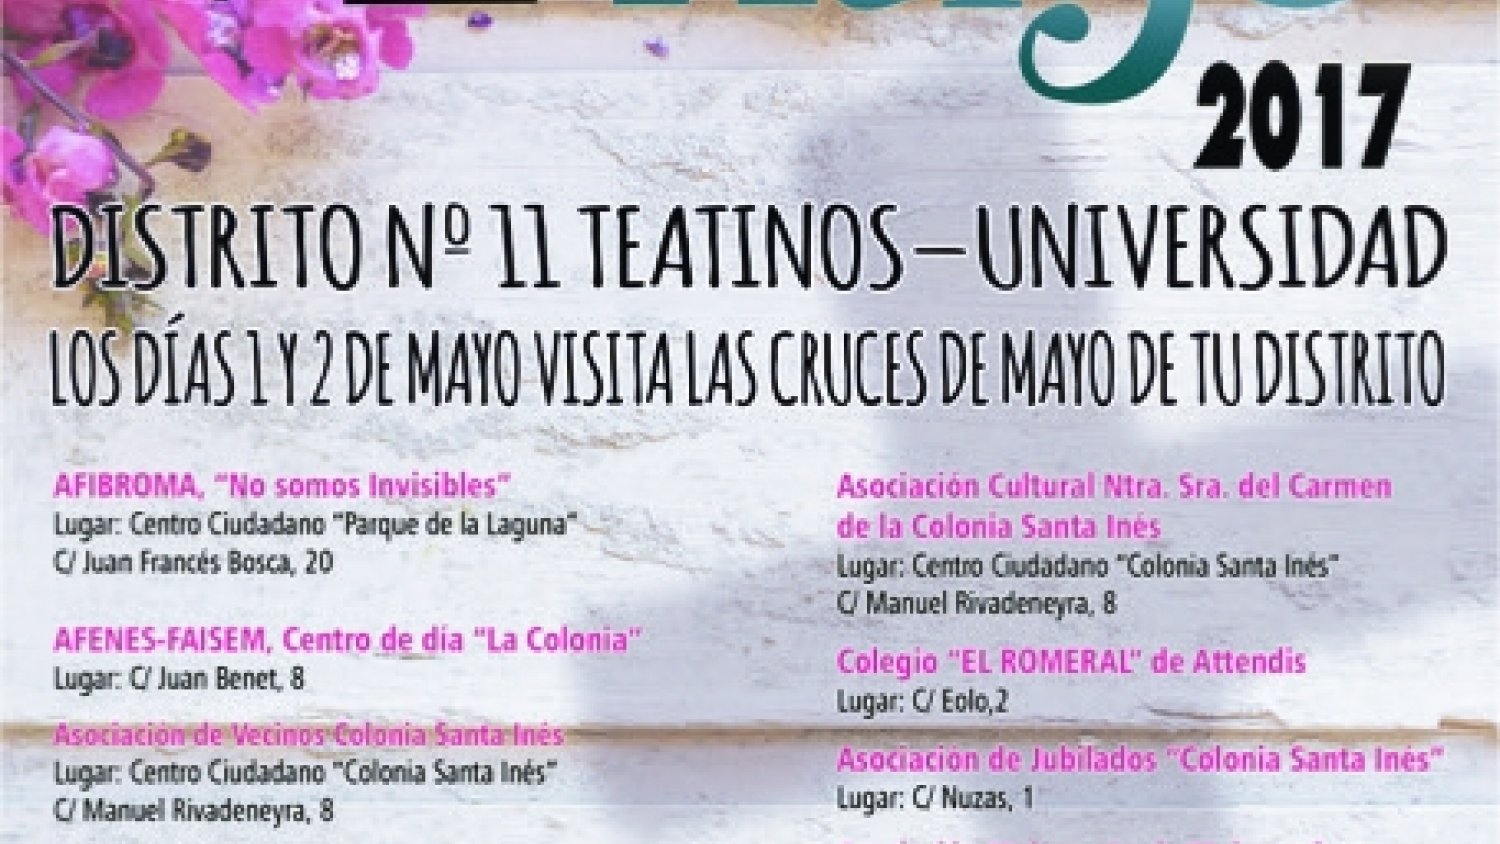 El 1 y 2 de mayo podrán visitarse las Cruces de Mayo del concurso Teatinos-Universidad